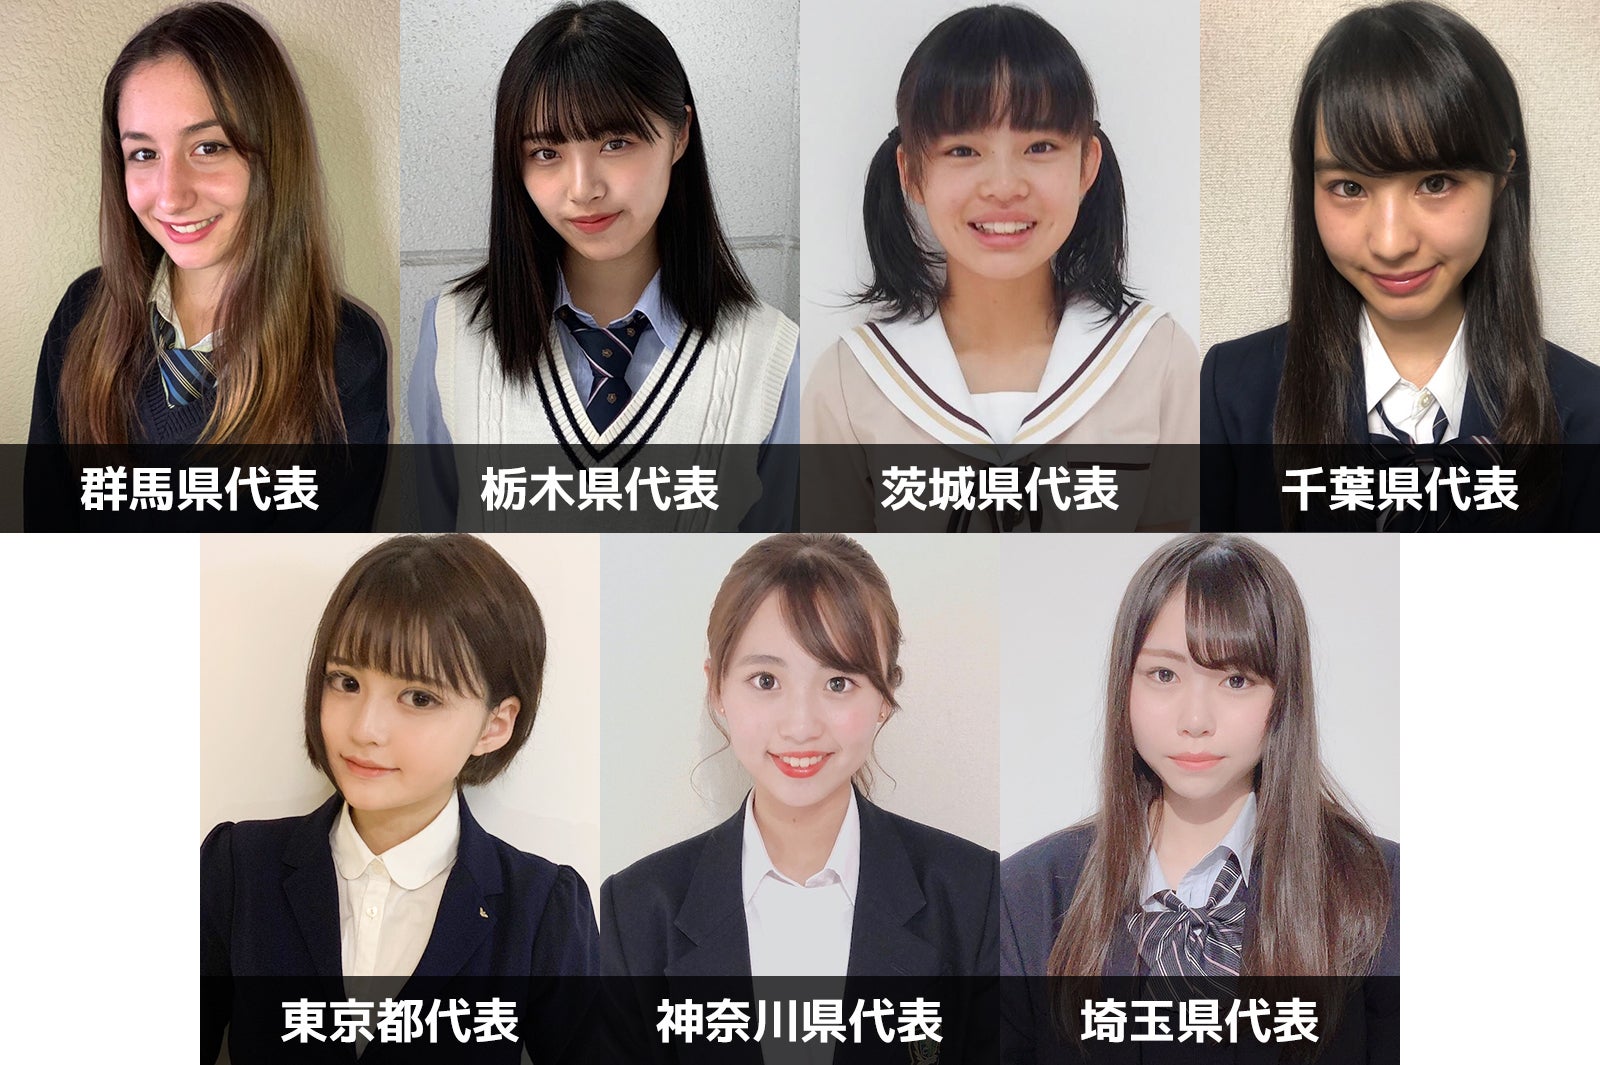 女子高生ミスコン19 関東エリアの代表者が決定 日本一かわいい女子高生 Sns審査結果 モデルプレス